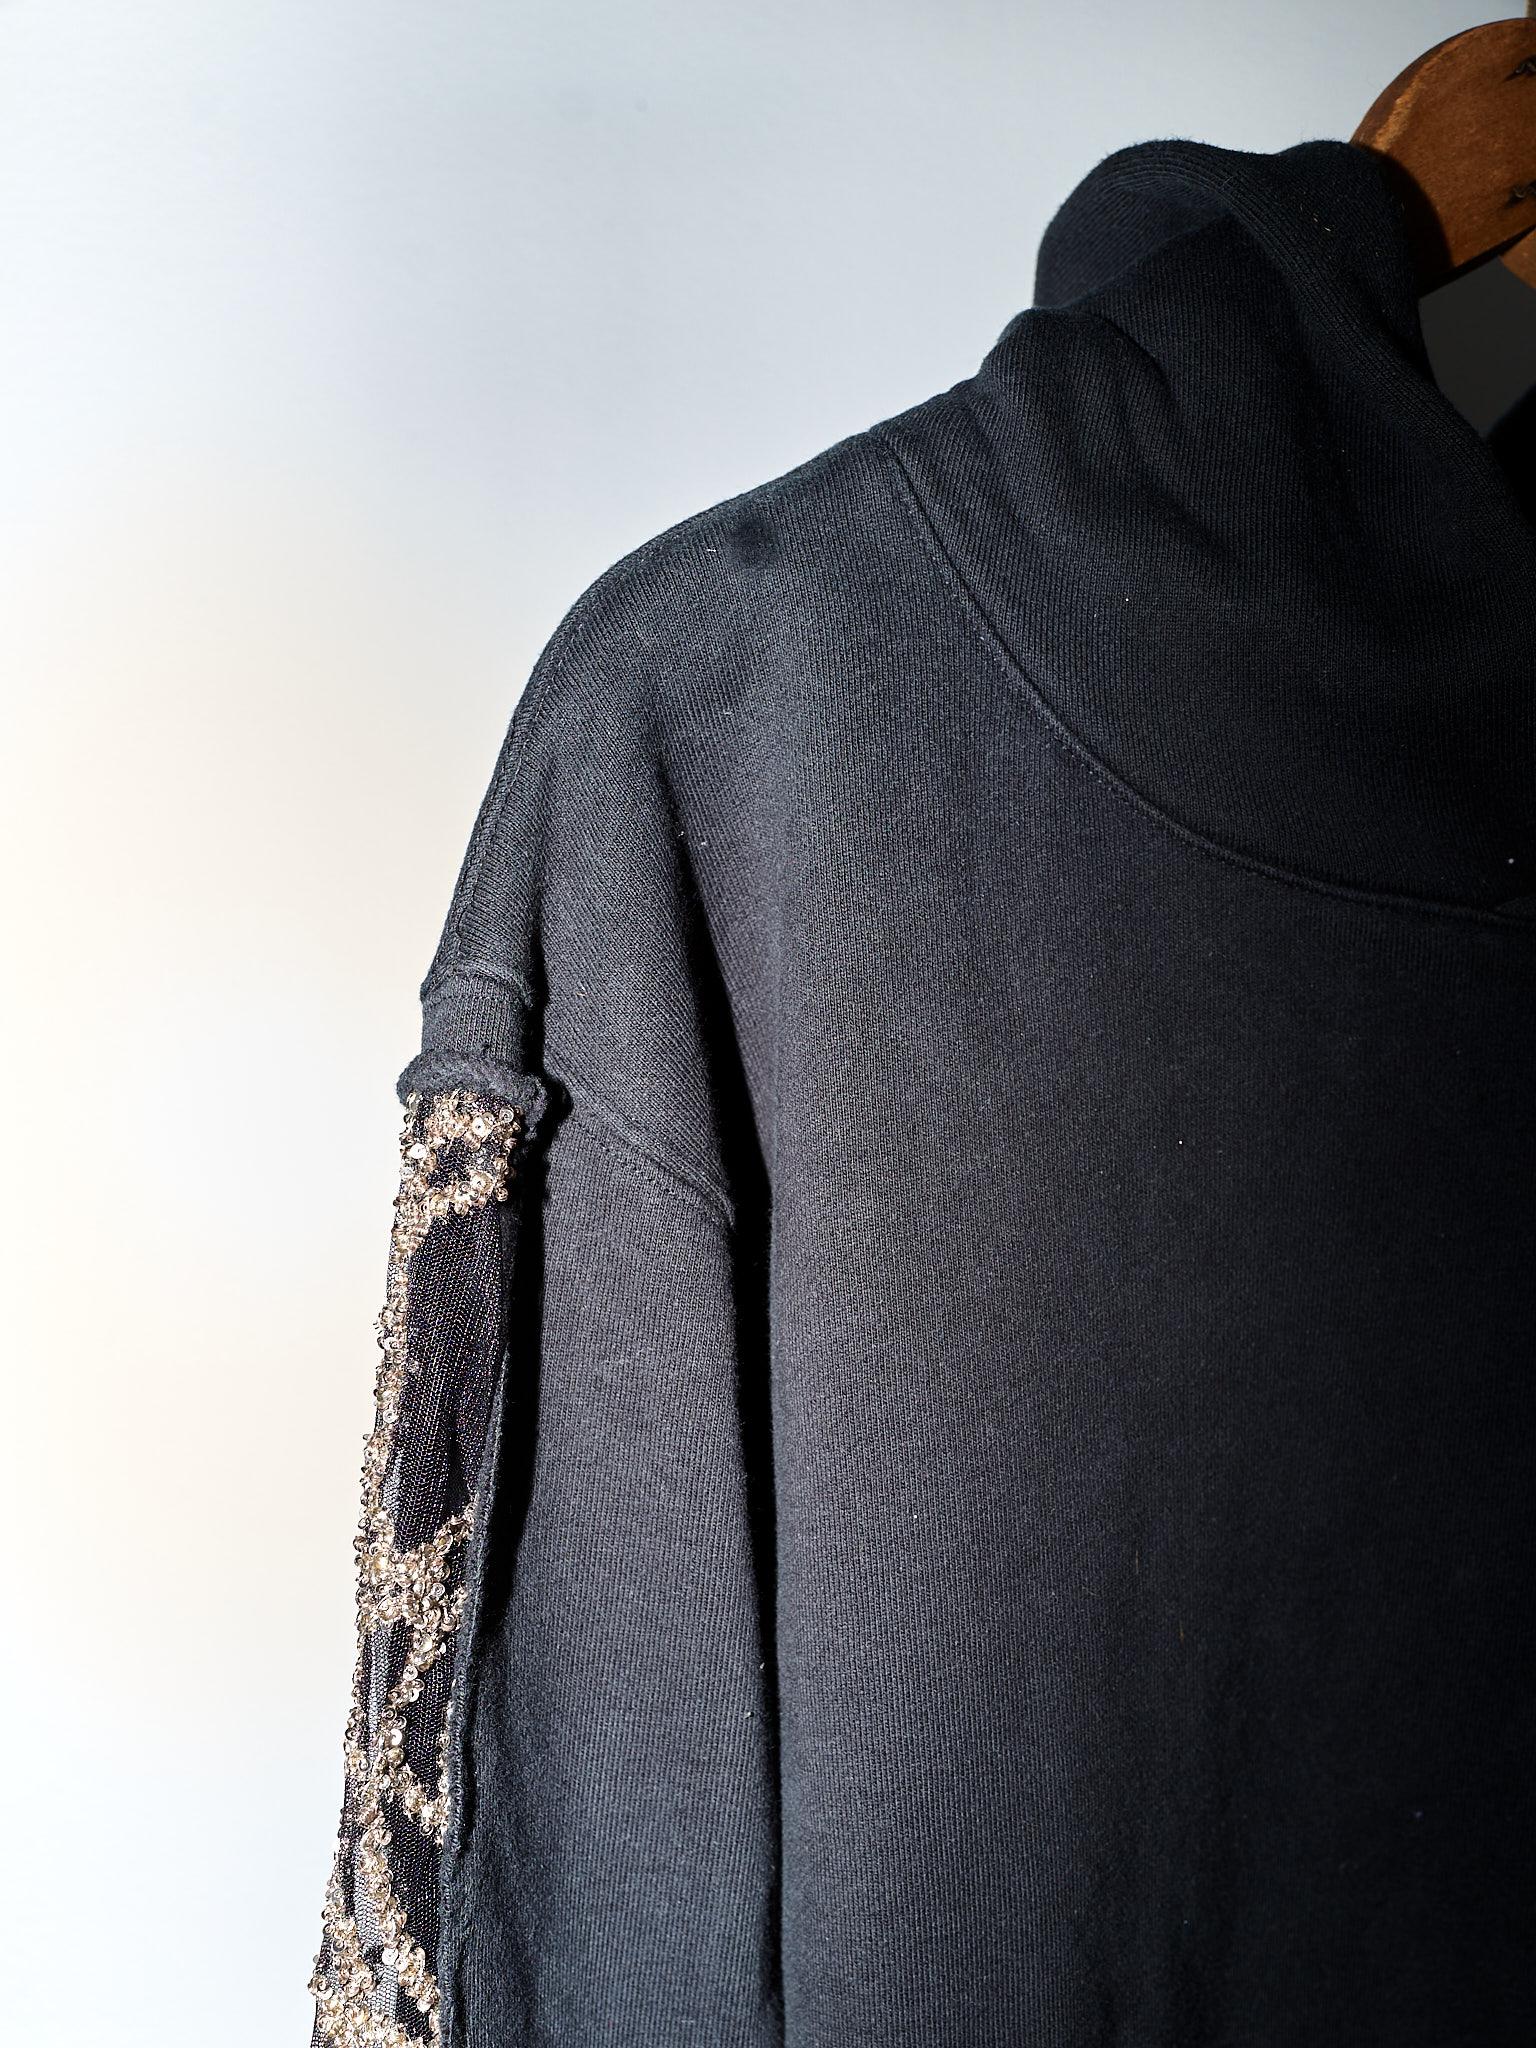 Black Hoodie Sweatshirt Embellished Chrystal Black J Dauphin 5